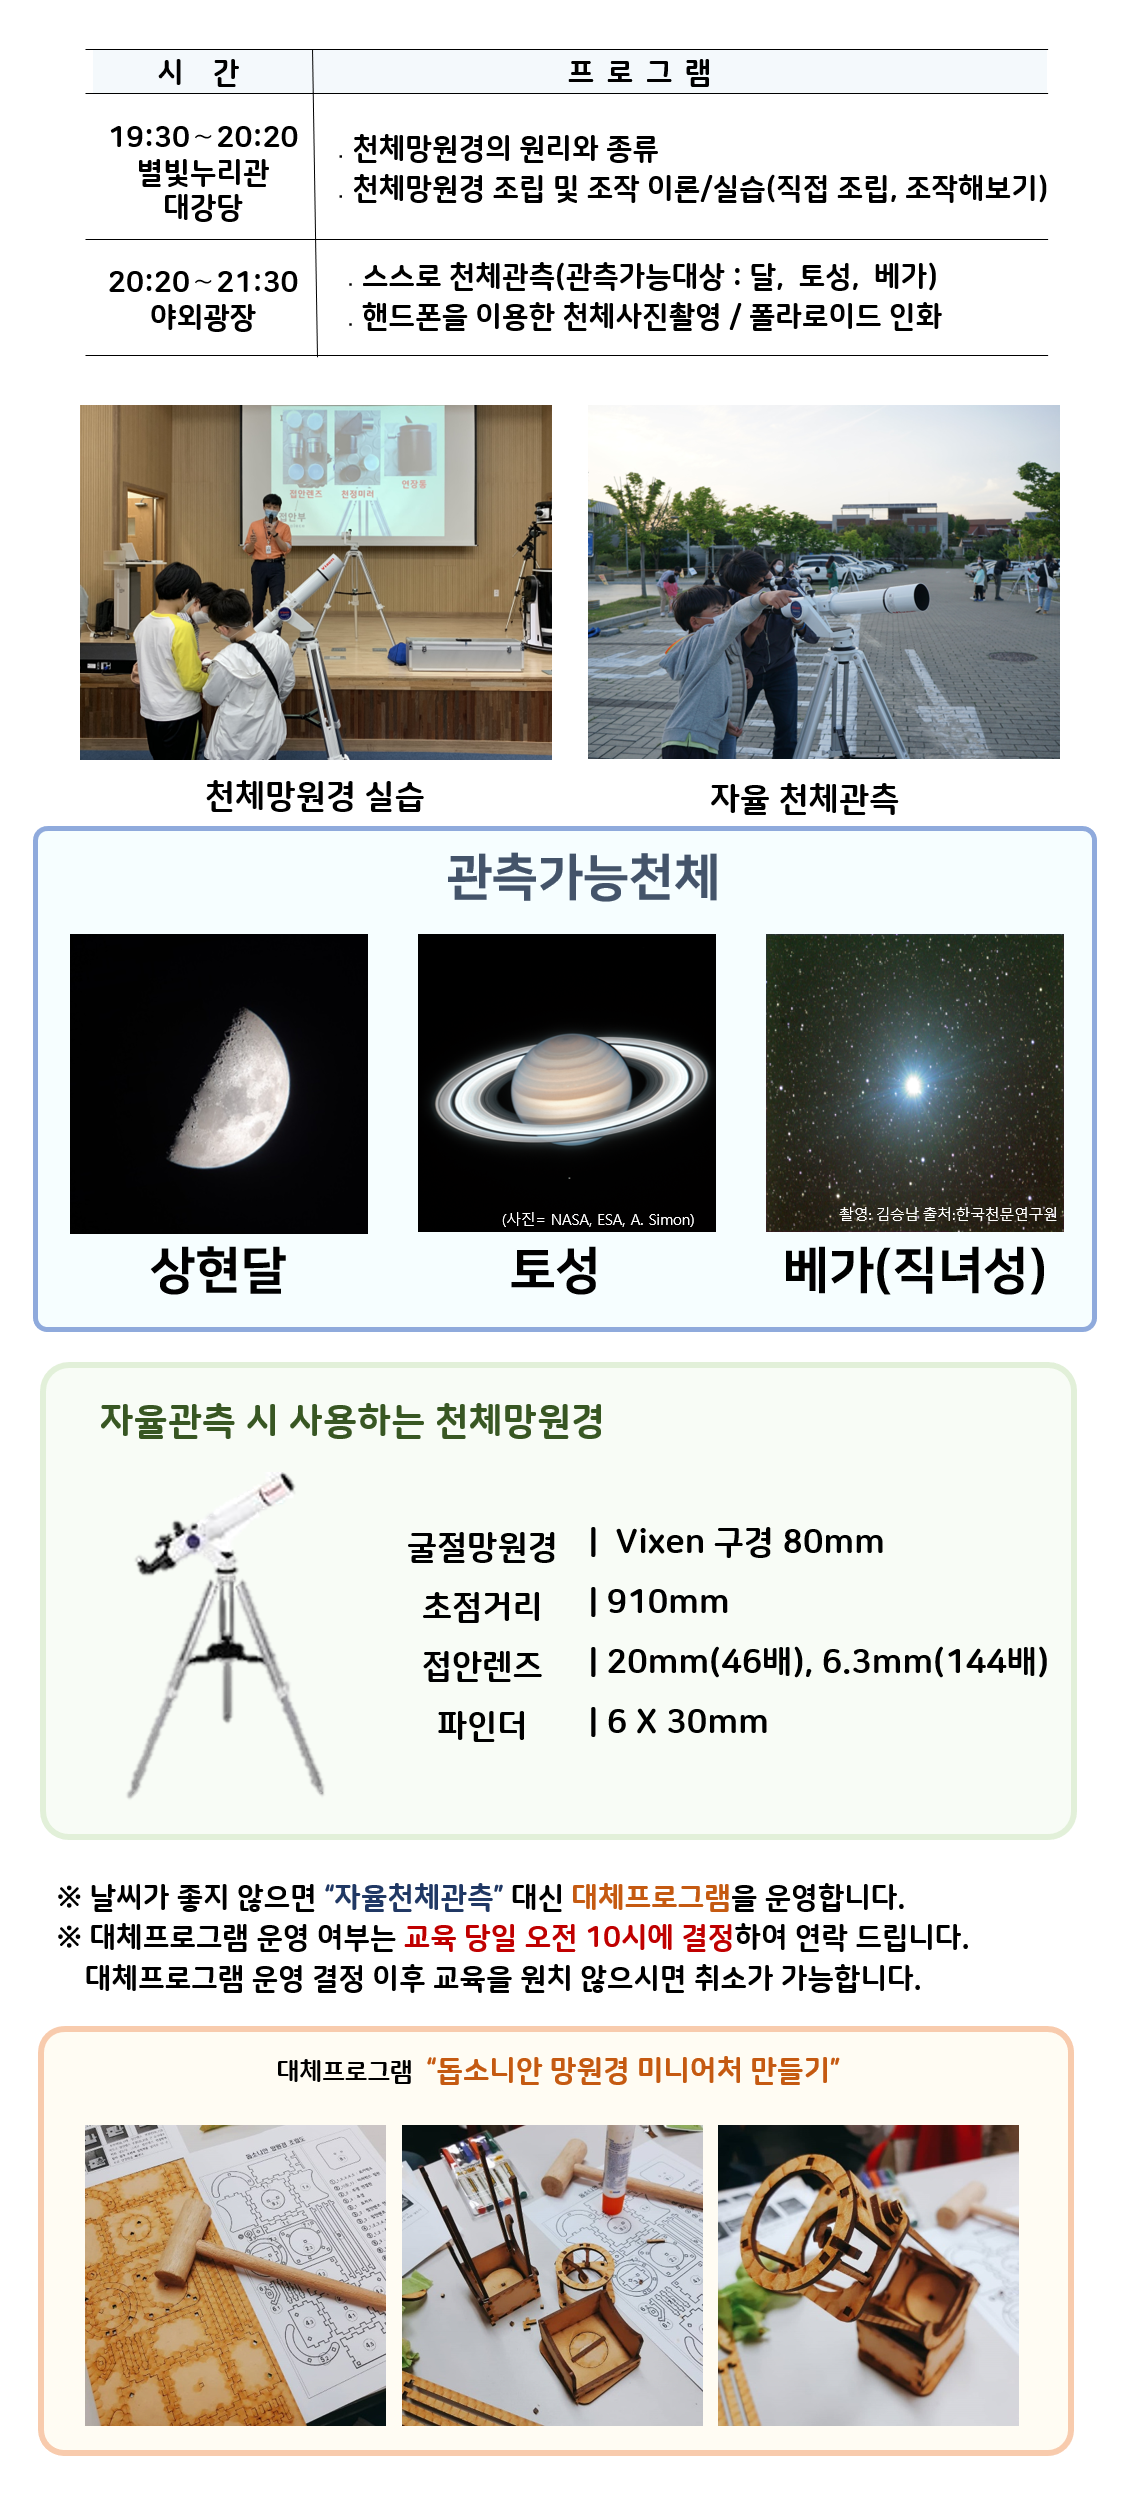  관측대장 시간 프로그램 19:30～20:20 별빛누리관 대강당 ․천체망원경의 원리와 종류 ․천체망원경 조립 및 조작 이론/실습(직접 조립, 조작해보기) |20:20～21:30 야외광장 ․스스로 천체관측(관측가능대상 : 달,  토성,  베가) ․핸드폰을 이용한 천체사진촬영 / 폴라로이드 인화|  천체망원경 실습(천체망원경 실습하는 사진) |자율 천체관측(관람객이 자율적으로 천체관측하는 모습)|관찰가능한 천체 상현달(상현달 사진), 토성(토성 사진), 베가(직녀성) (베가 사진)|자율관측 시 사용하는 천체 망원경(천체망원경 사진),  굴절망원경 Vixen 구경 80mm 초점거리 910mm 접안렌즈 20mm(46배), 6.3mm(144배) 파인더 6 X 30mm| ※ 날씨가 좋지 않으면 “자율천체관측” 대신 대체프로그램을 운영합니다.  ※ 대체프로그램 운영 여부는 교육 당일 오전 10시에 결정하여 연락 드립니다. 대체프로그램 운영 결정 이후 교육을 원치 않으시면 취소가 가능합니다.| 대체프로그램 '돕소니안 망원경 미니어처 만들기(돕소니안 망원경 미니어처 만들기 재료사진, 돕소니안 망원경 미니어처 만들기 제작과정 사진, 돕소니안 망원경 미니어처 만들기 완성품 사진)' 